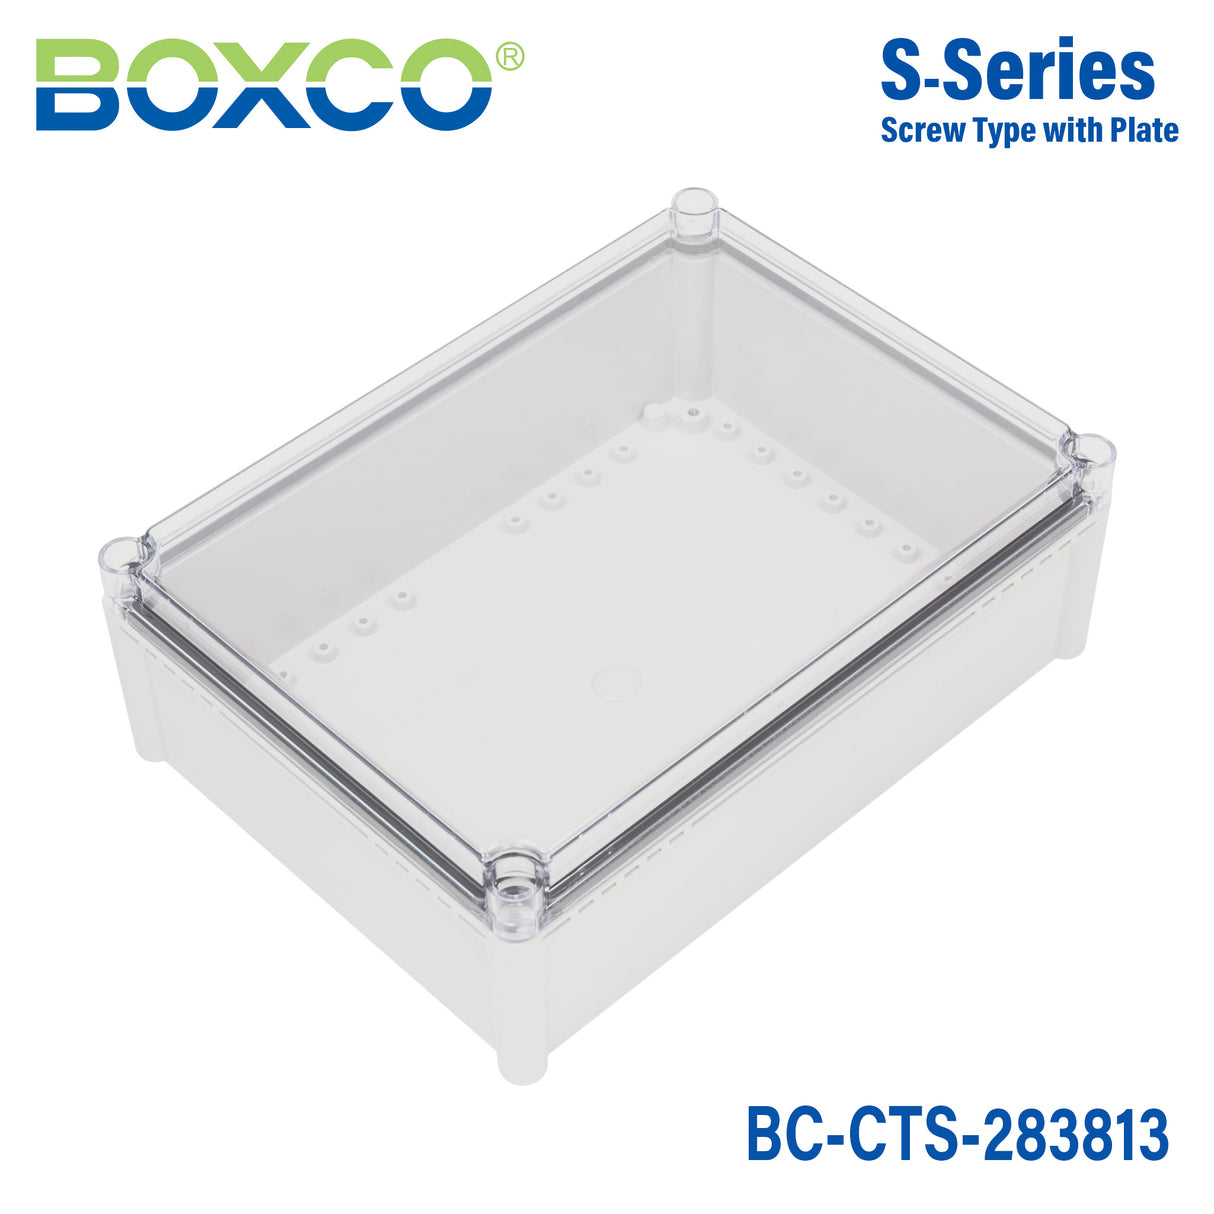 Boxco S-Series 280x380x130mm Plastic Enclosure, IP67, IK08, PC, Transparent Cover, Screw Type